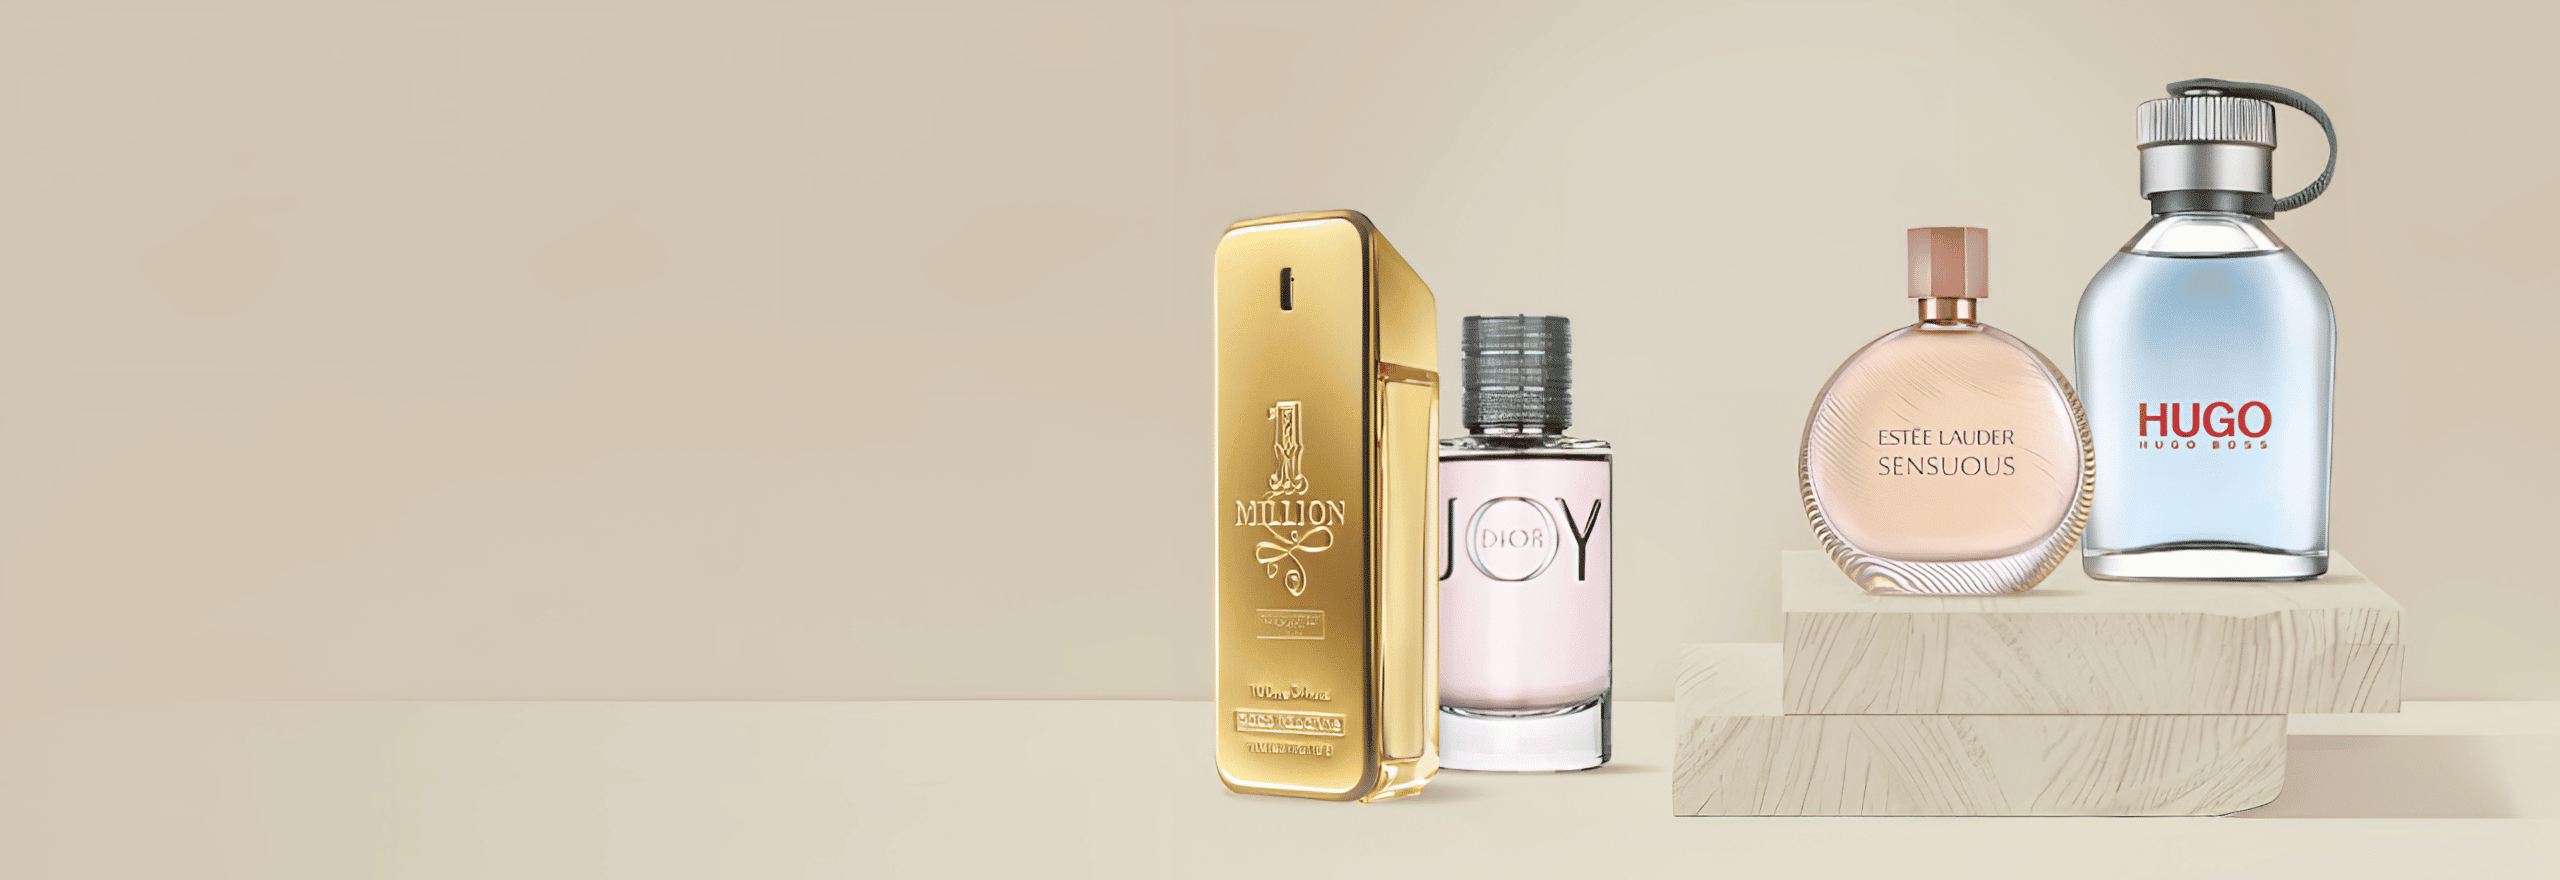 Roberto Cavalli - Just Perfume